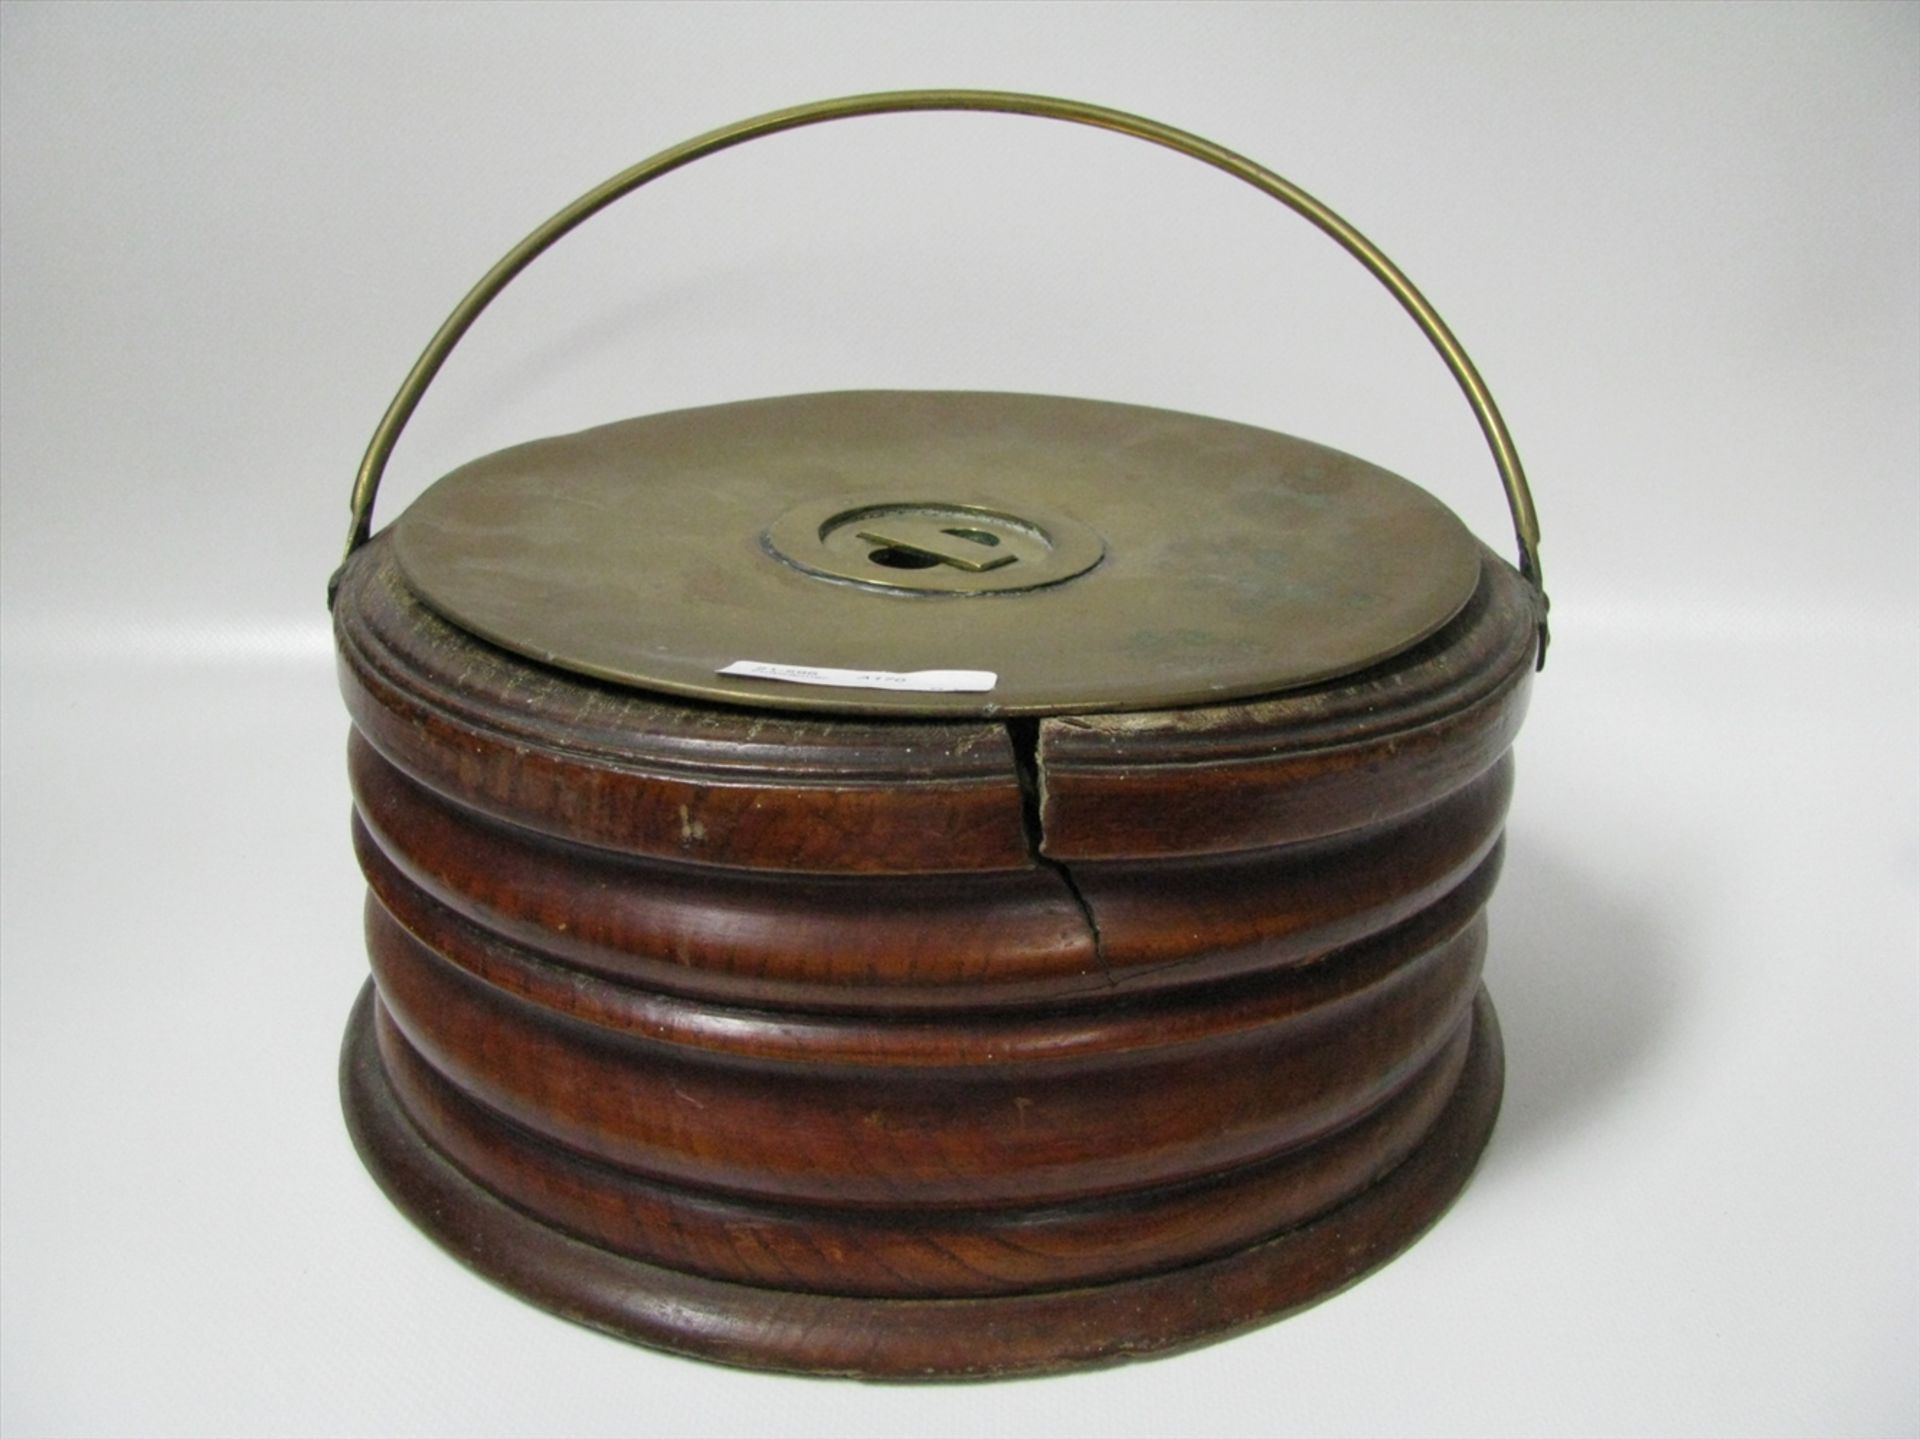 Antiker Fußwärmer, 19. Jahrhundert, Holz mit Kupfer- und Messingeinsatz, h 12,5 cm, d 26 cm.- - -